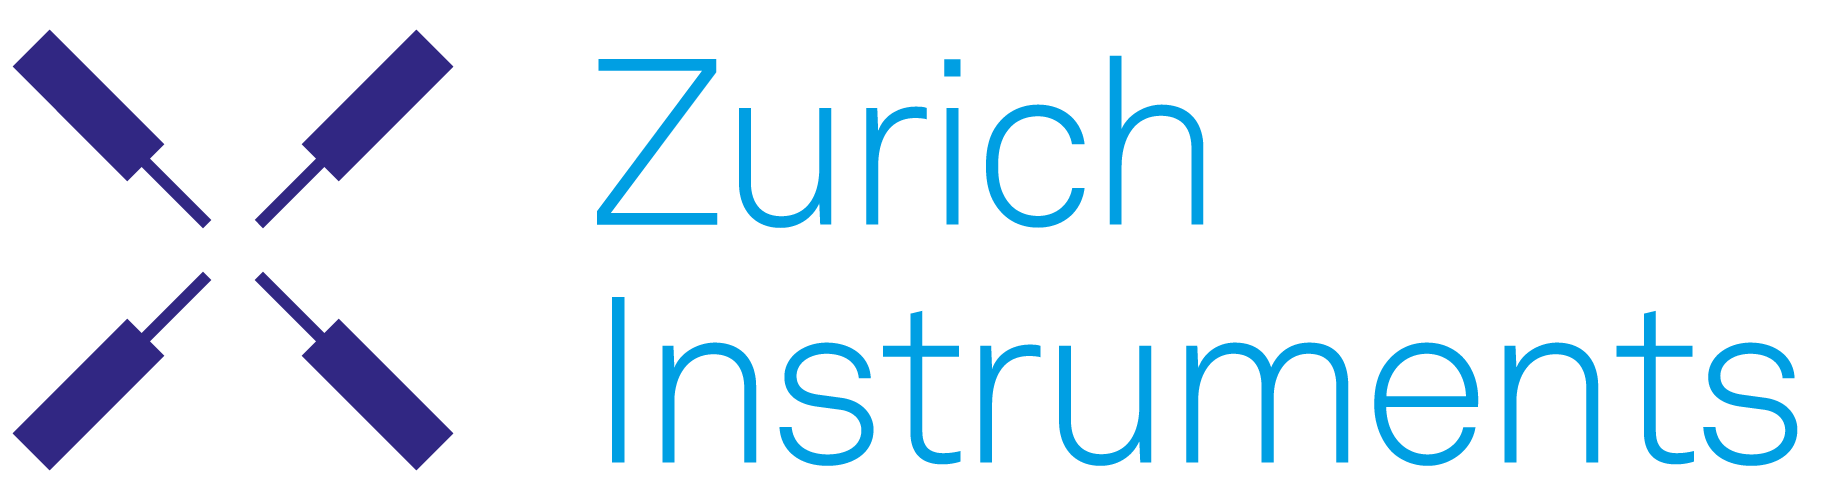 Zurich hljóðfæri